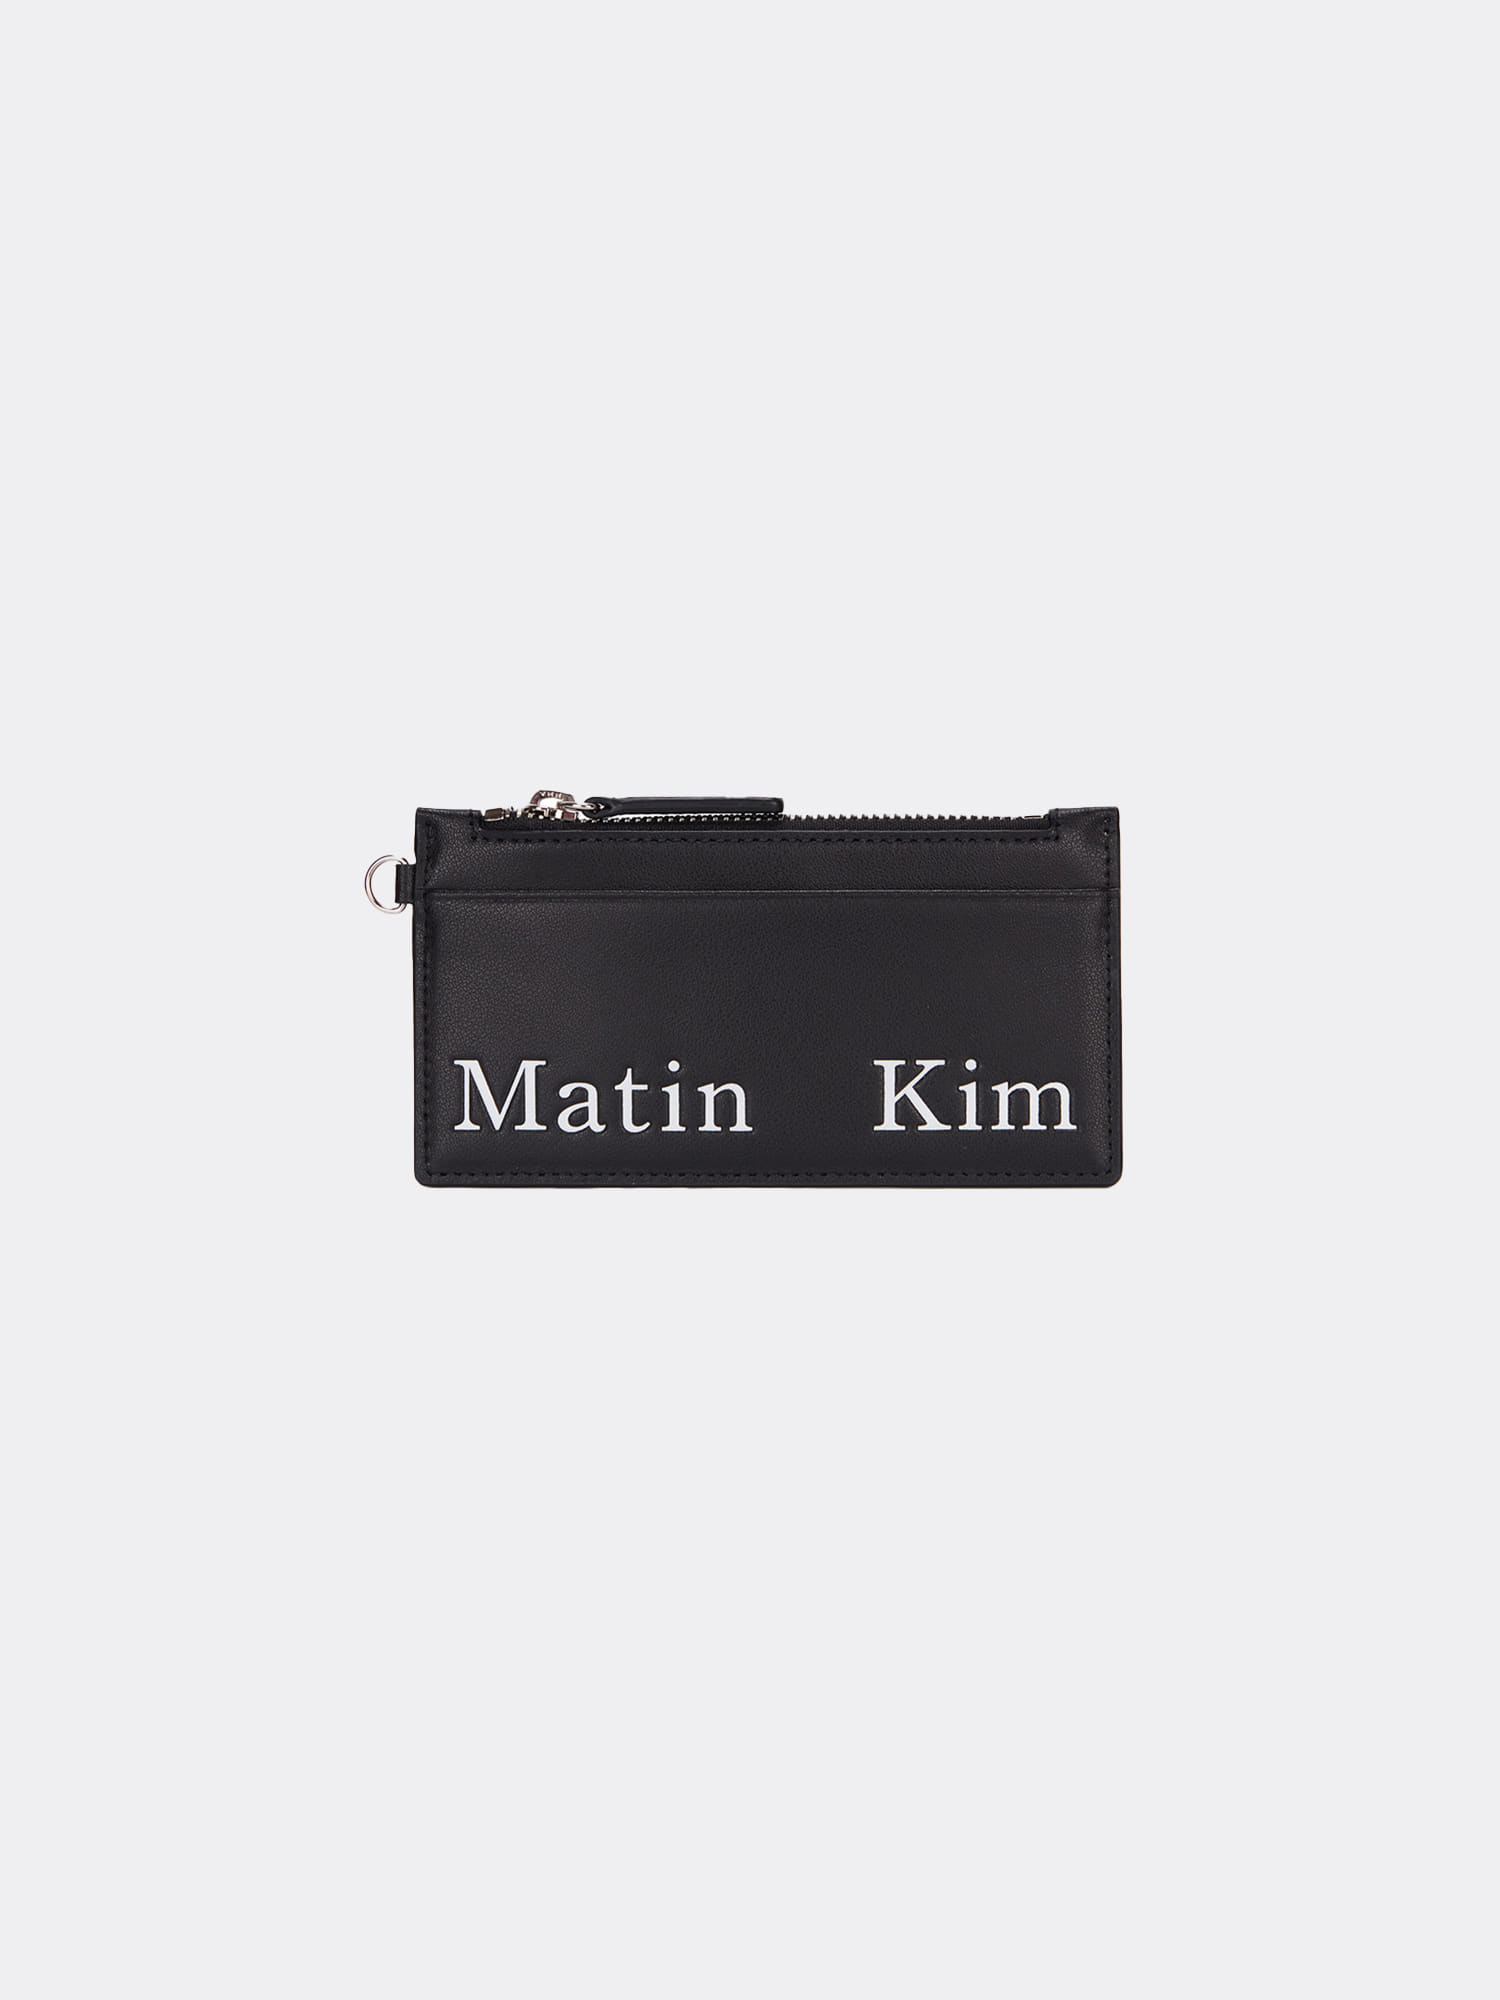 마뗑킴 MATIN KIM NECKLACE WALLET IN BLACK